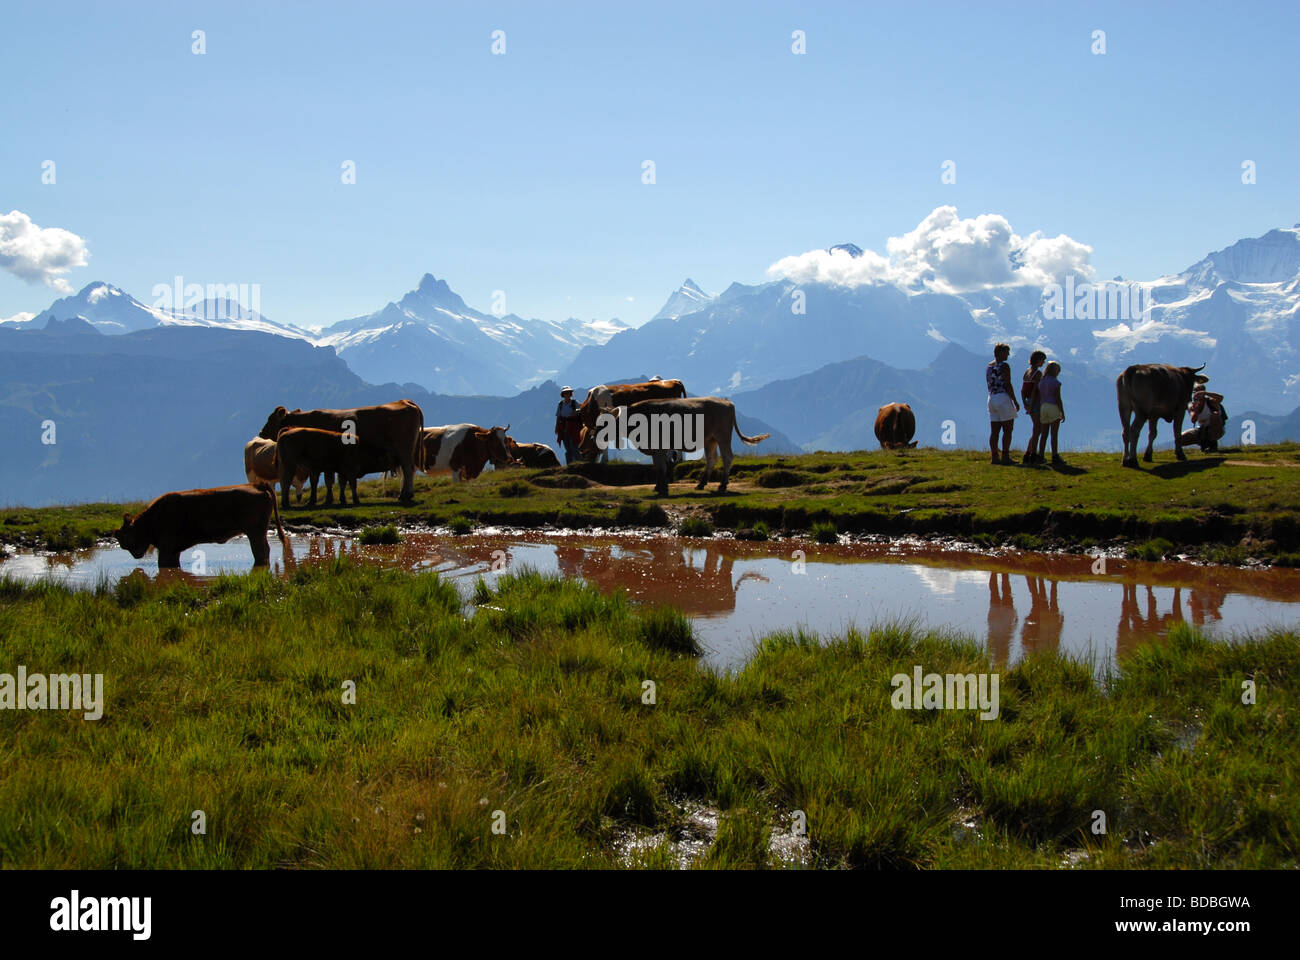 Les vaches sur les pâturages alpins avec les randonneurs Valais alpes Suisse Banque D'Images